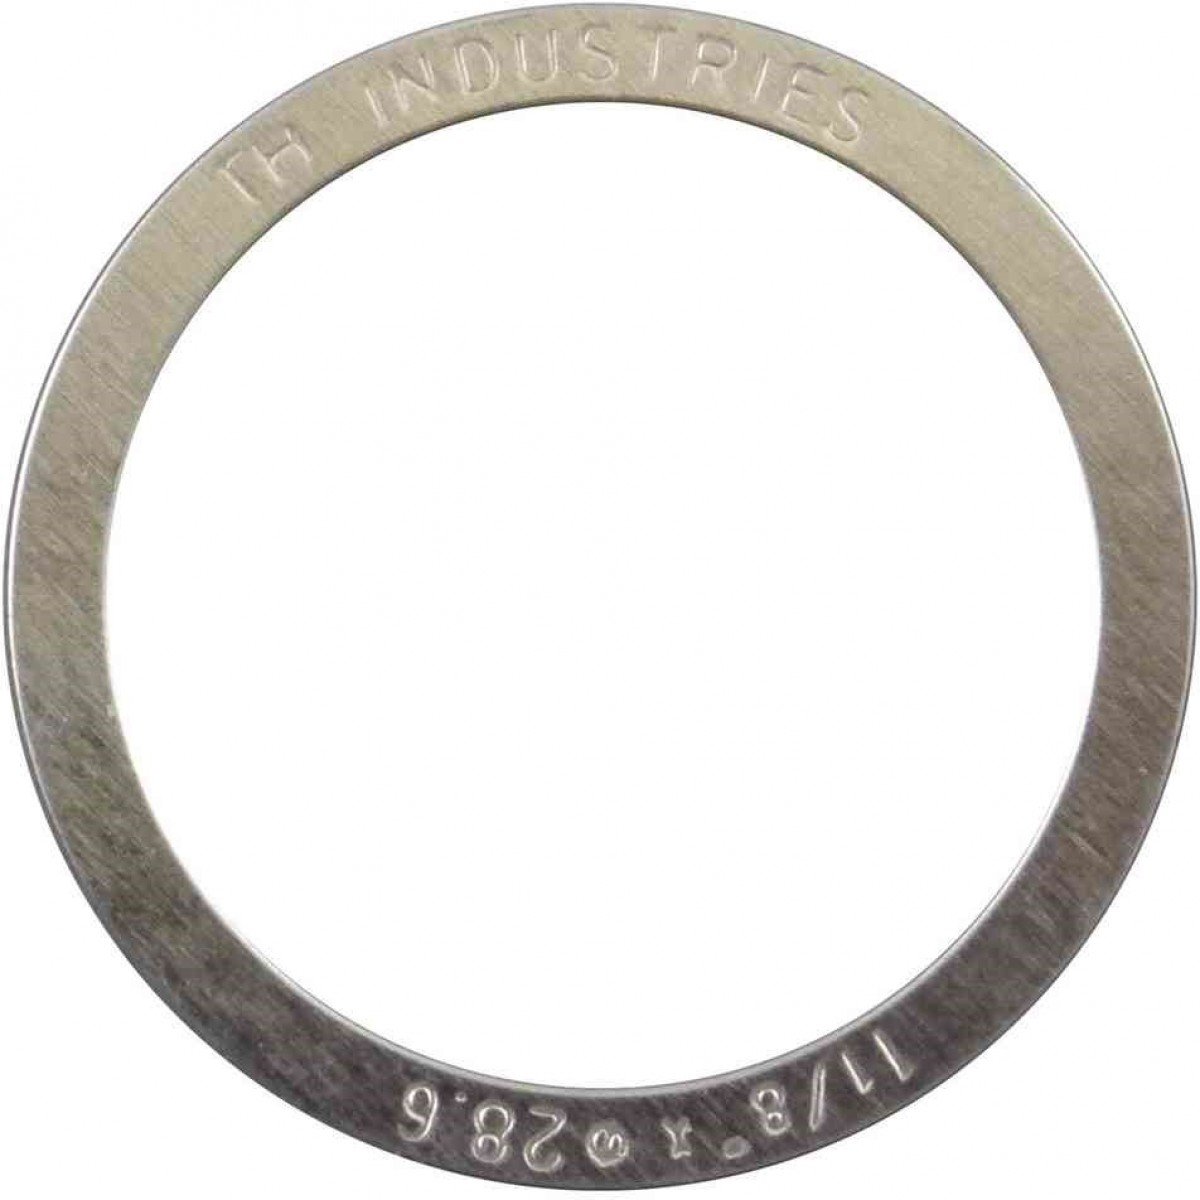 Микро-кольцо прокладочное Elvedes, для рулевой колонки 1-1/8, 0.25 мм, комплект 10 штук, 2017144-10, цвет серебристый